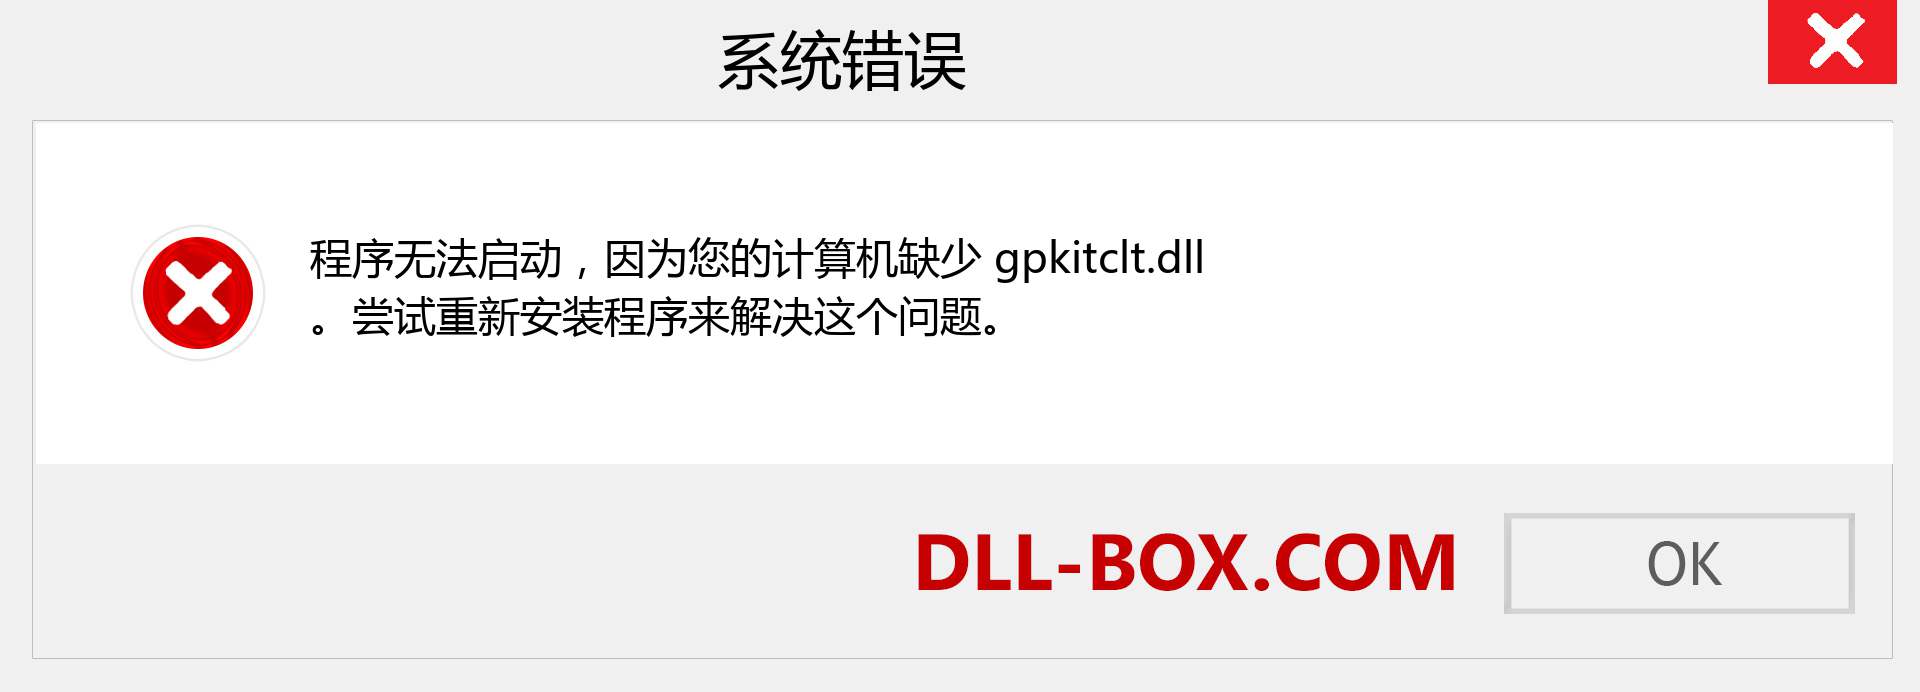 gpkitclt.dll 文件丢失？。 适用于 Windows 7、8、10 的下载 - 修复 Windows、照片、图像上的 gpkitclt dll 丢失错误